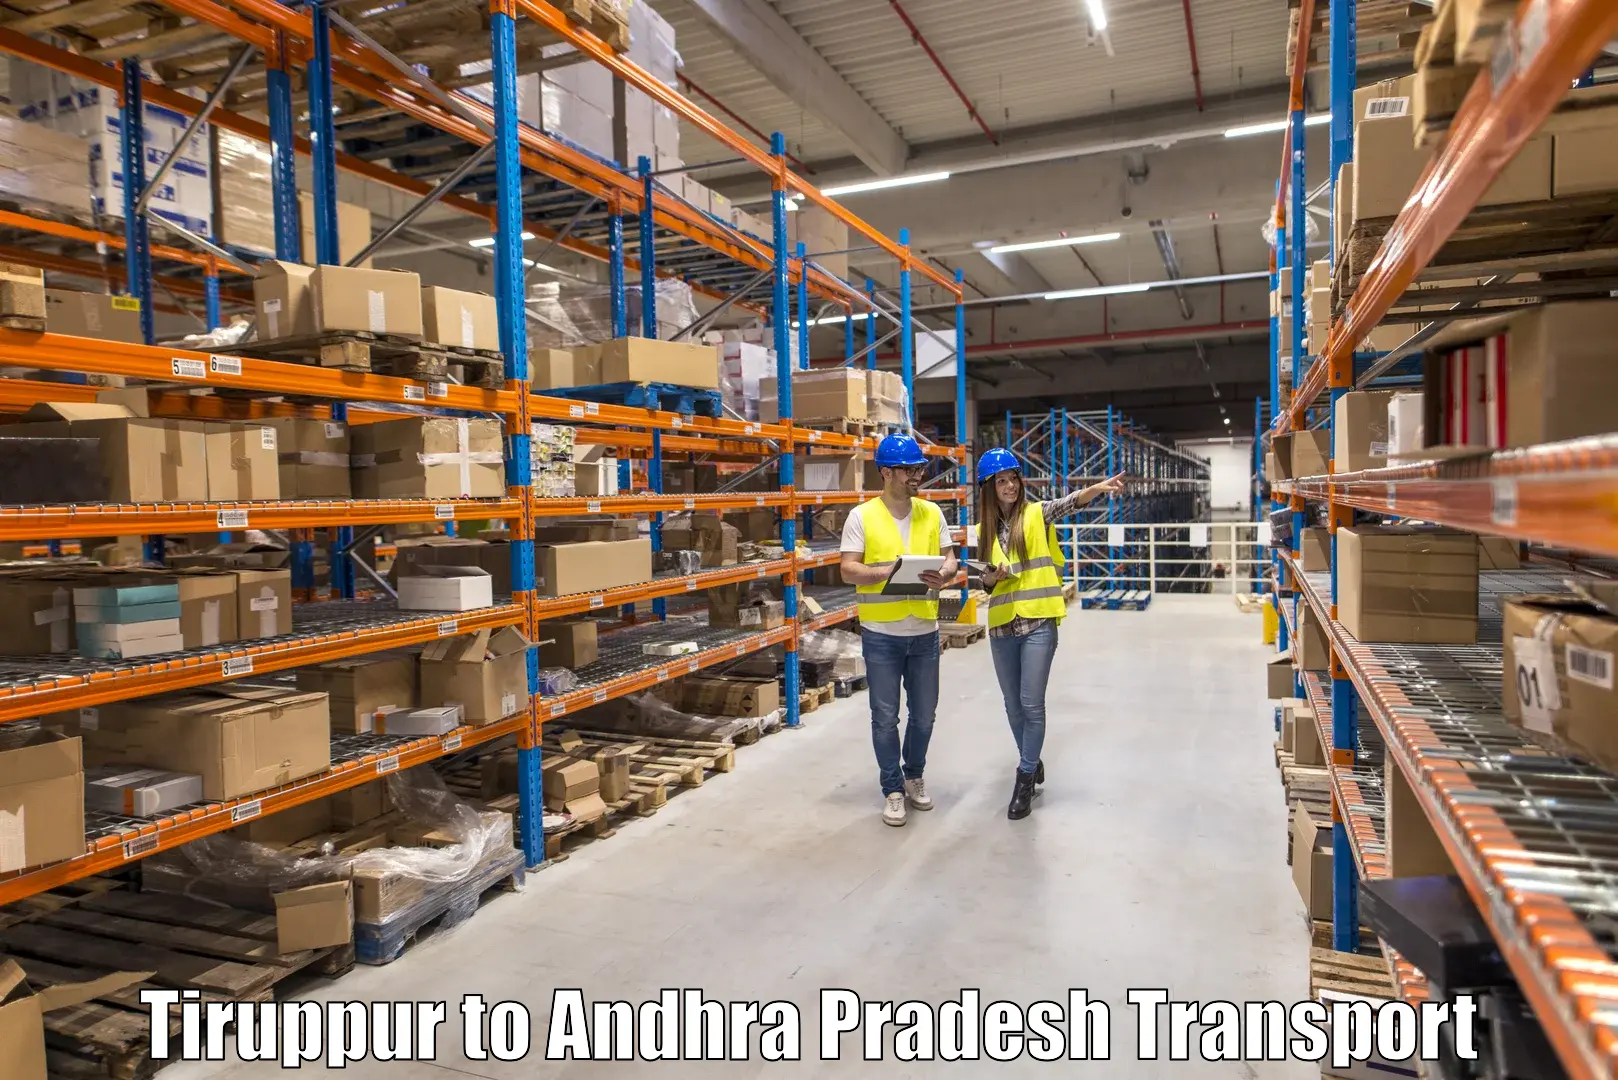 Vehicle transport services in Tiruppur to Malikipuram